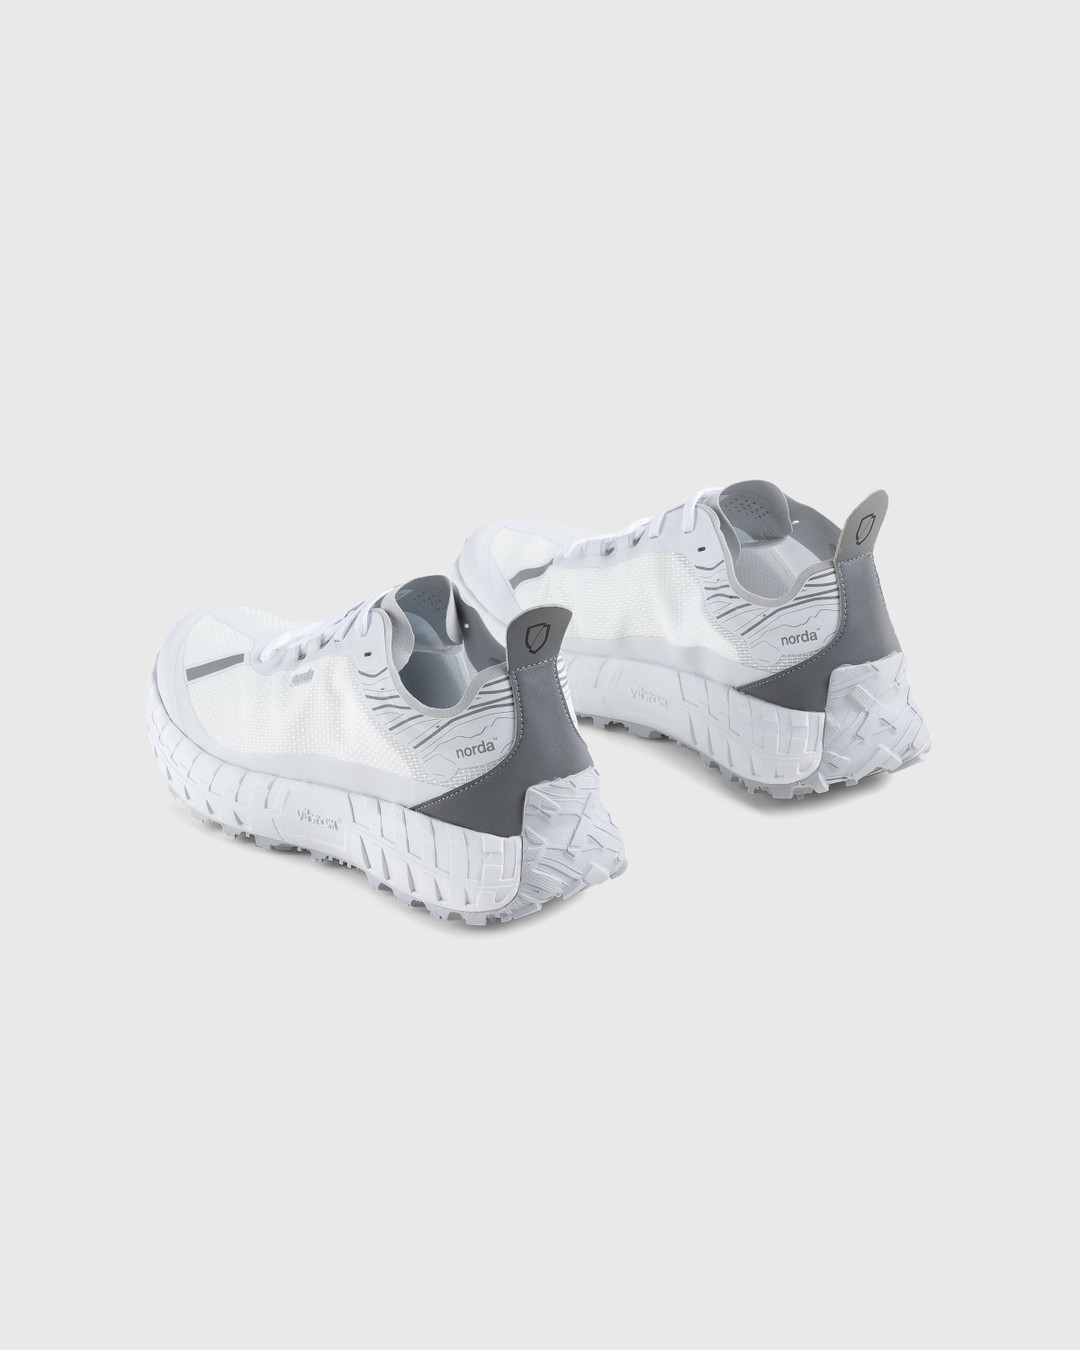 Norda – 001 M White/Grey - Sneakers - White - Image 4